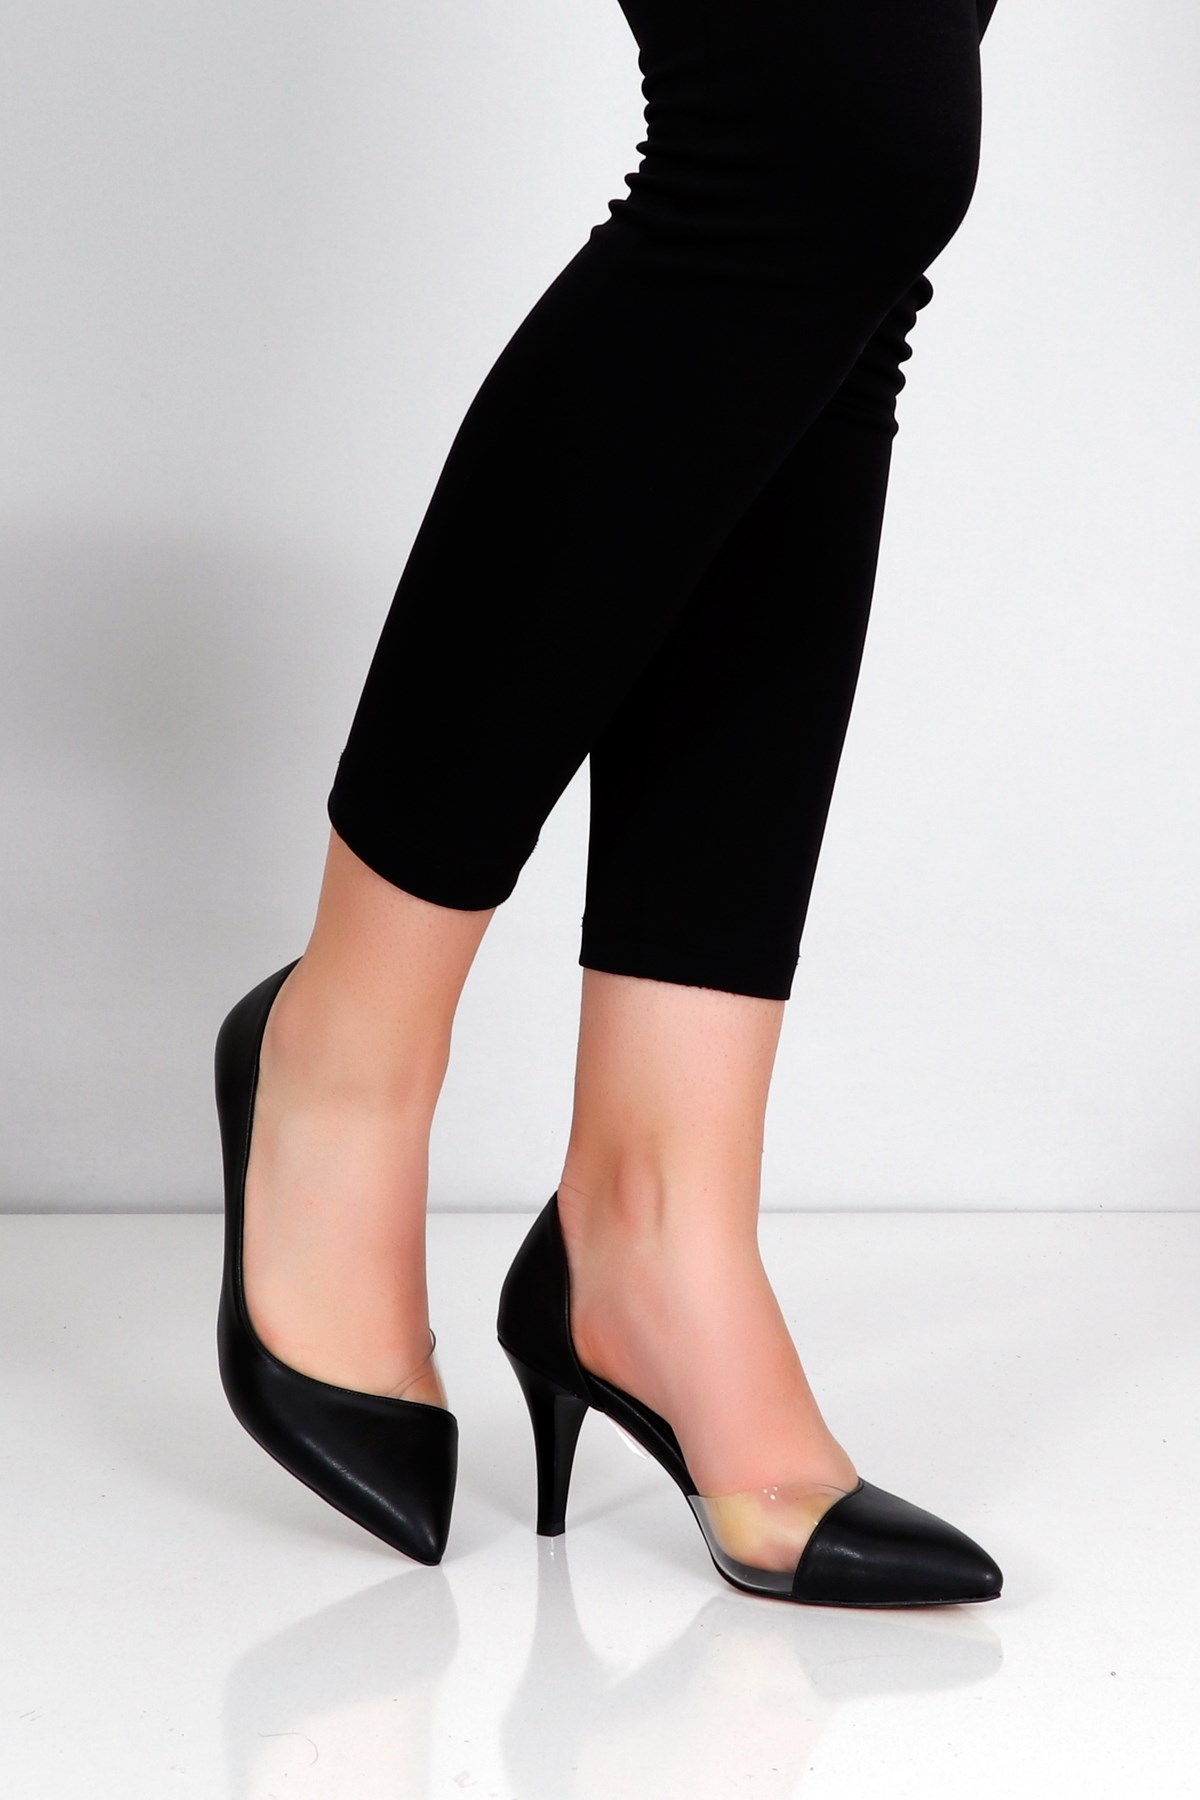 Siyah Topuklu Kadın Stiletto Ayakkabı 74 Fiyatı ve Modelleri